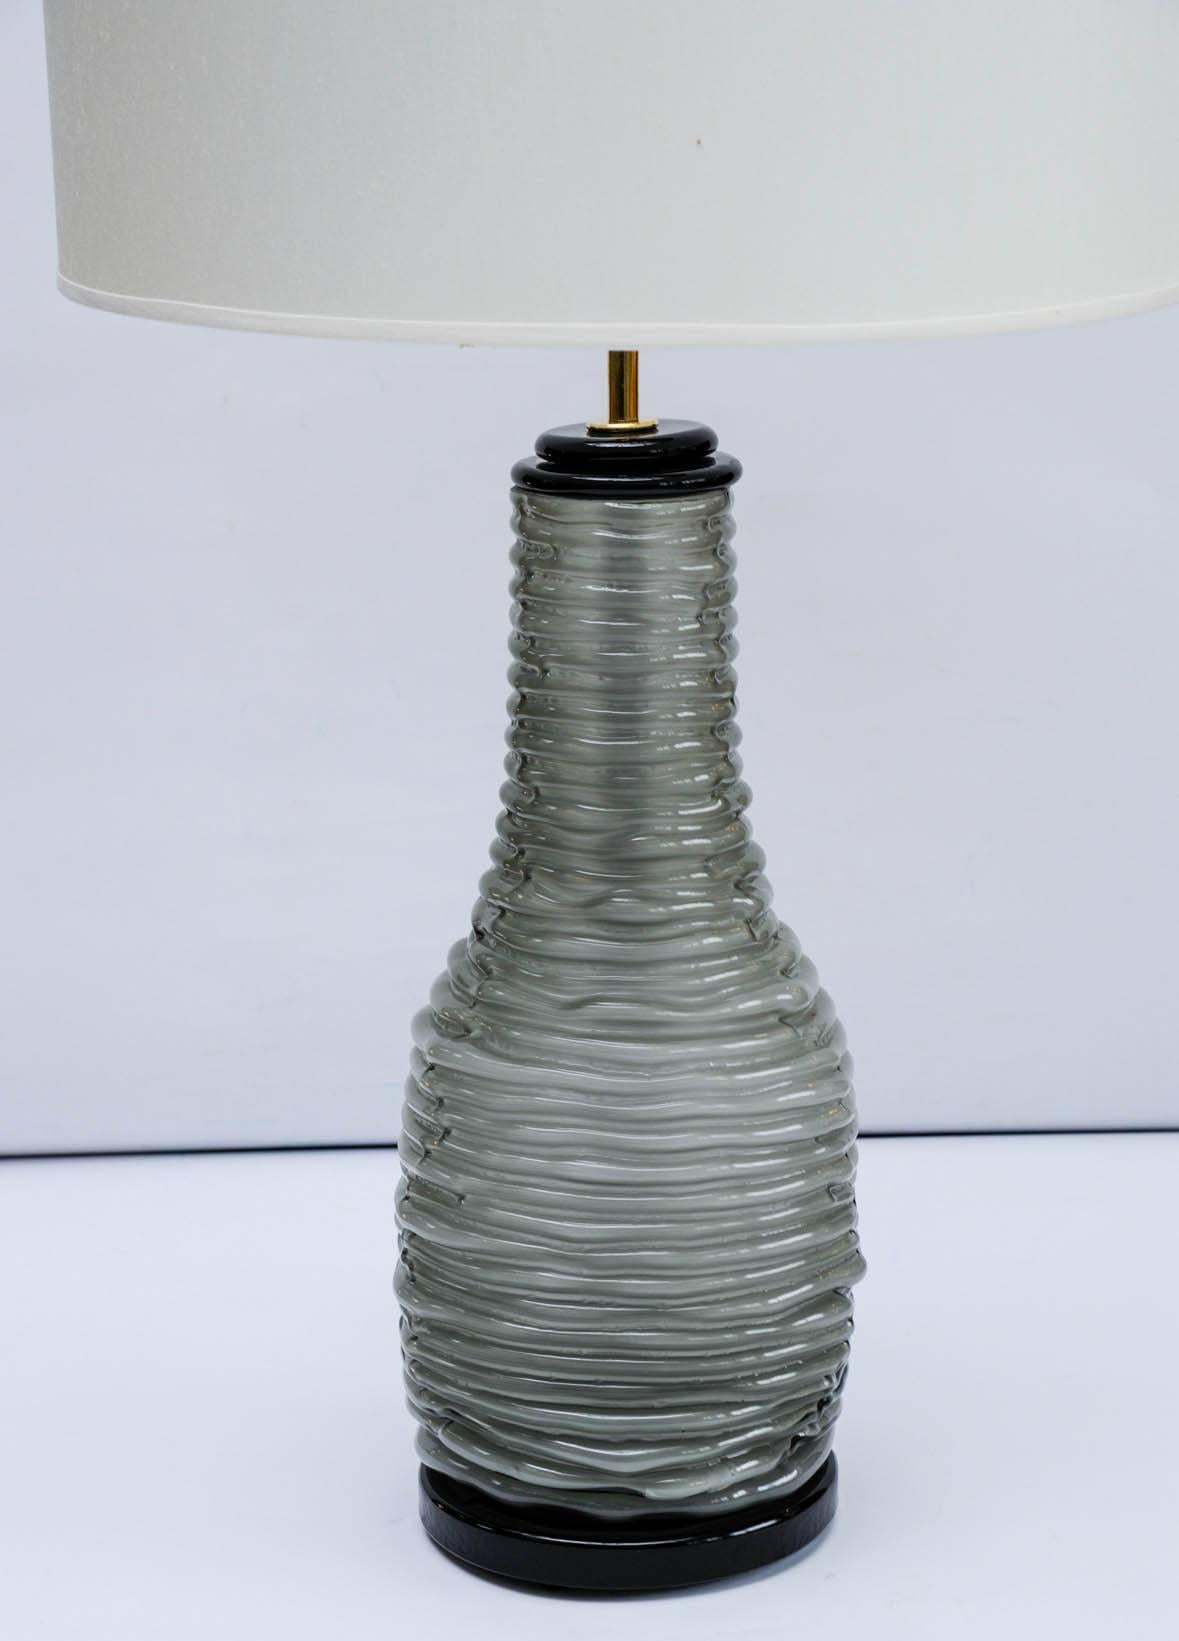 Paire de belles lampes de table raffinées en verre de Murano gris et noir et monture en laiton.

Le corps gris a une texture spéciale qui donne l'illusion optique d'une corde empilée sur elle-même pour former la lampe.